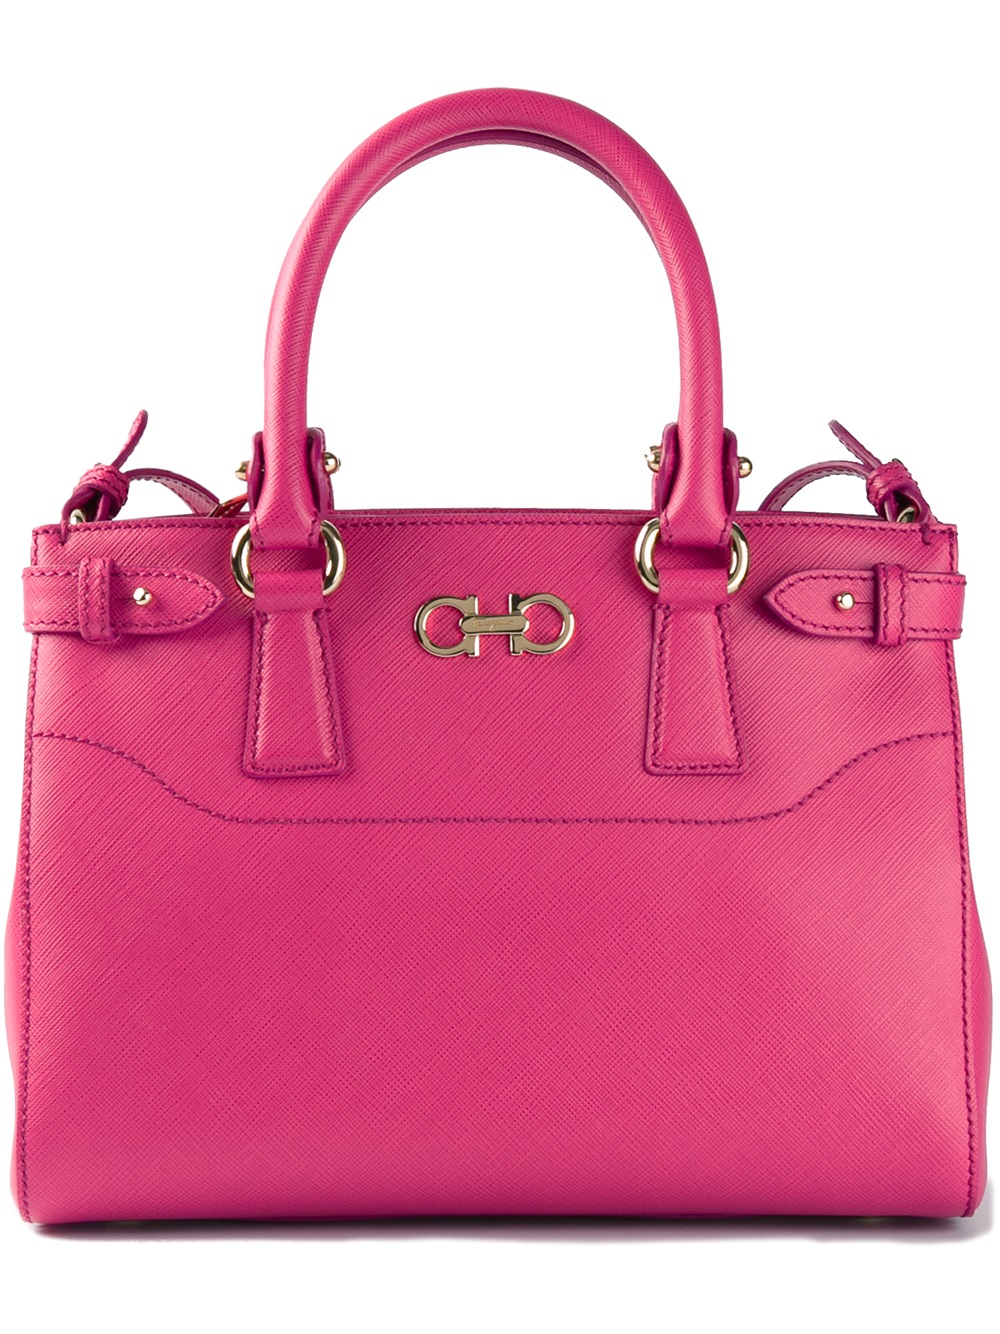 Ferragamo Handbags For Women | semashow.com